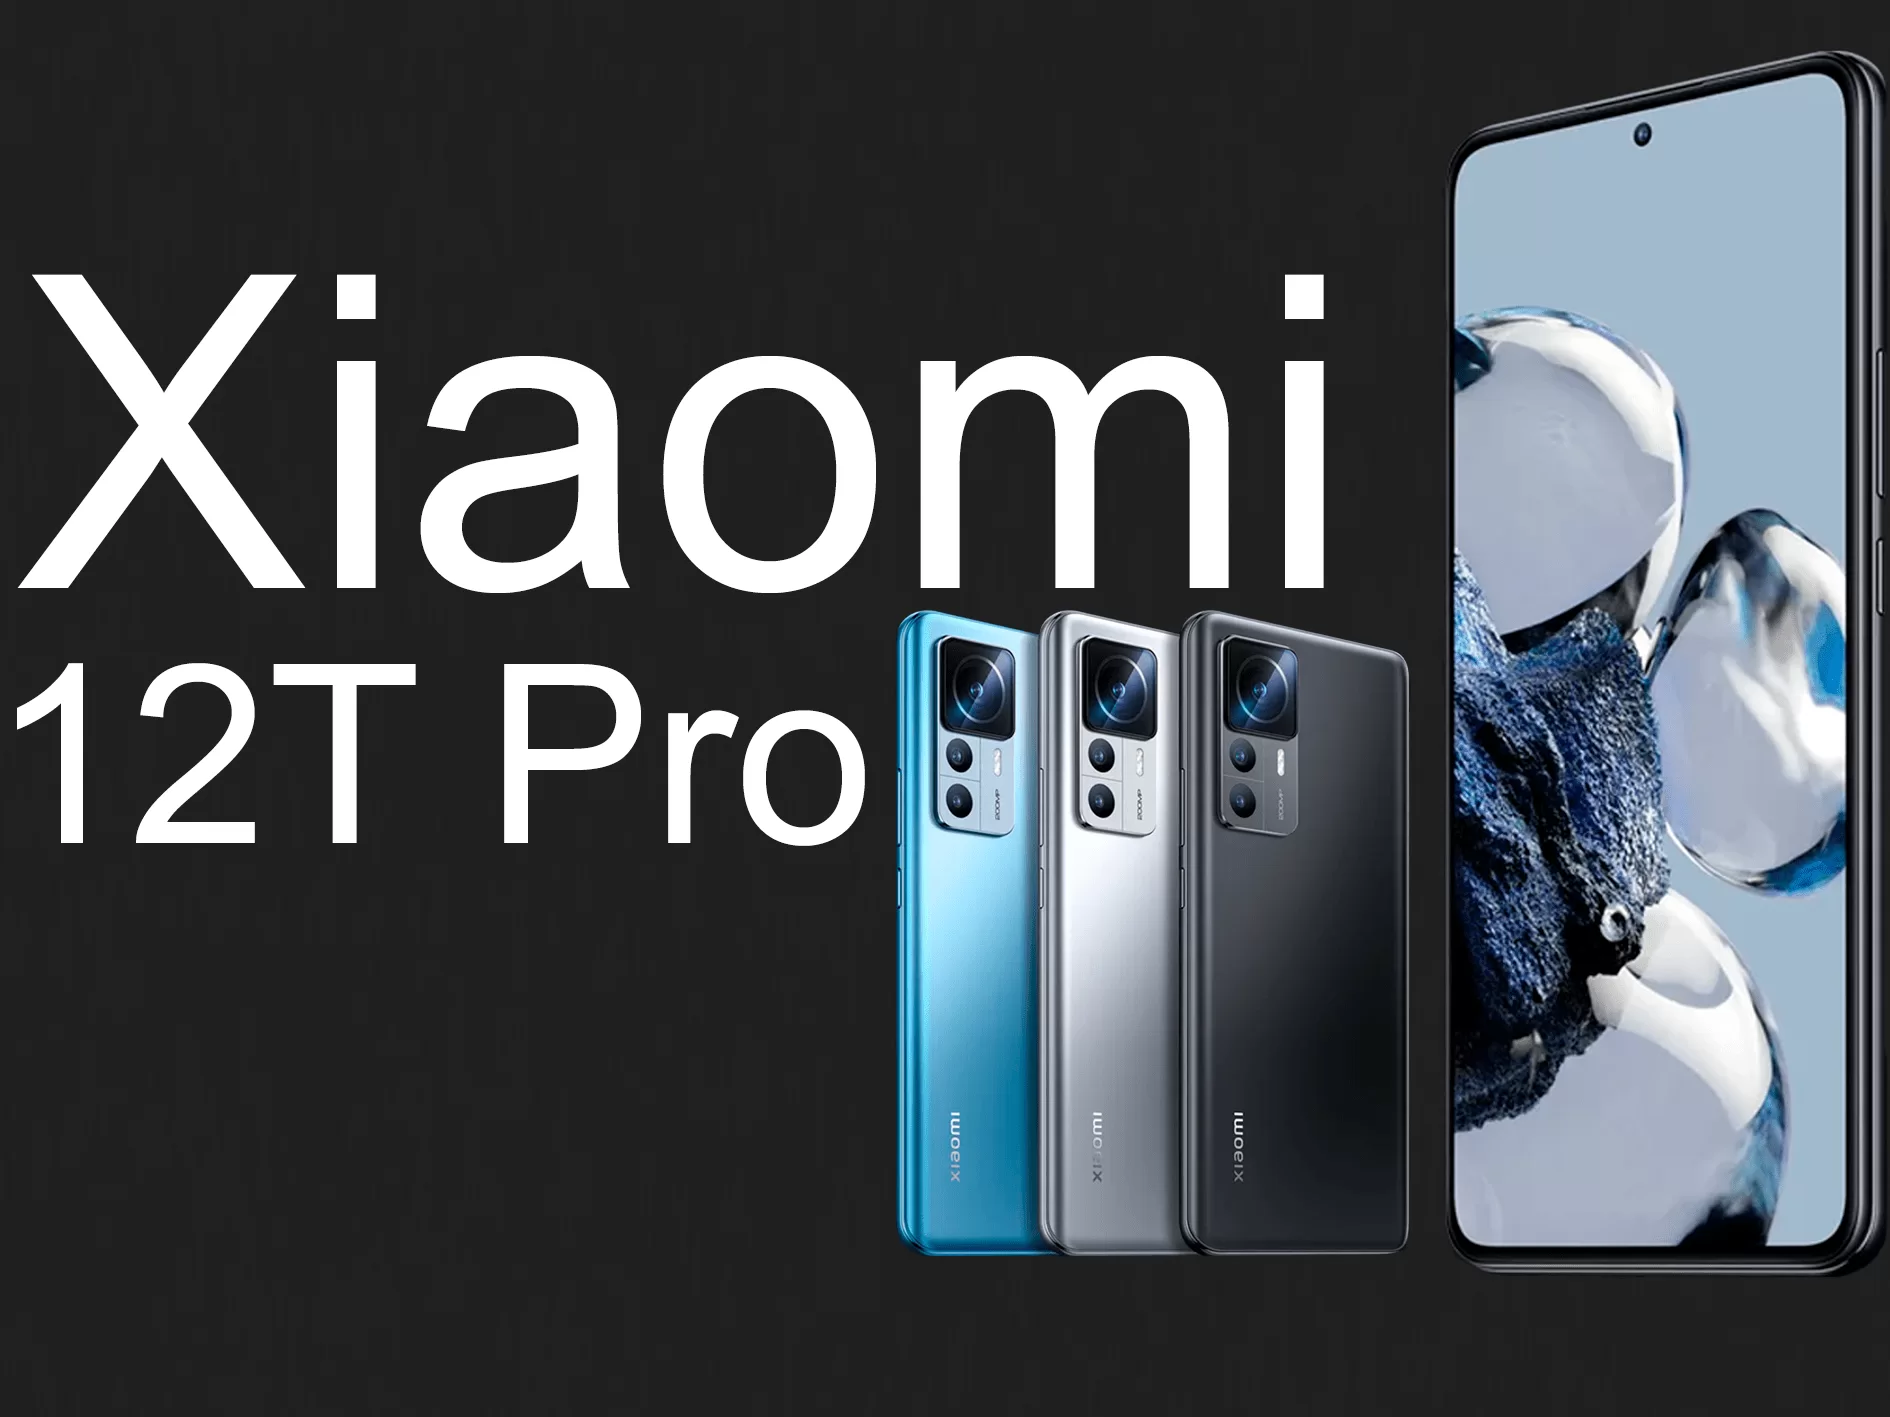 Detalles del último teléfono de Xiaomi, el 12T Pro. Este Smartphone tiene una batería enorme y un montón de otras características que lo convierten en una gran opción para cualquiera que busque un nuevo dispositivo.